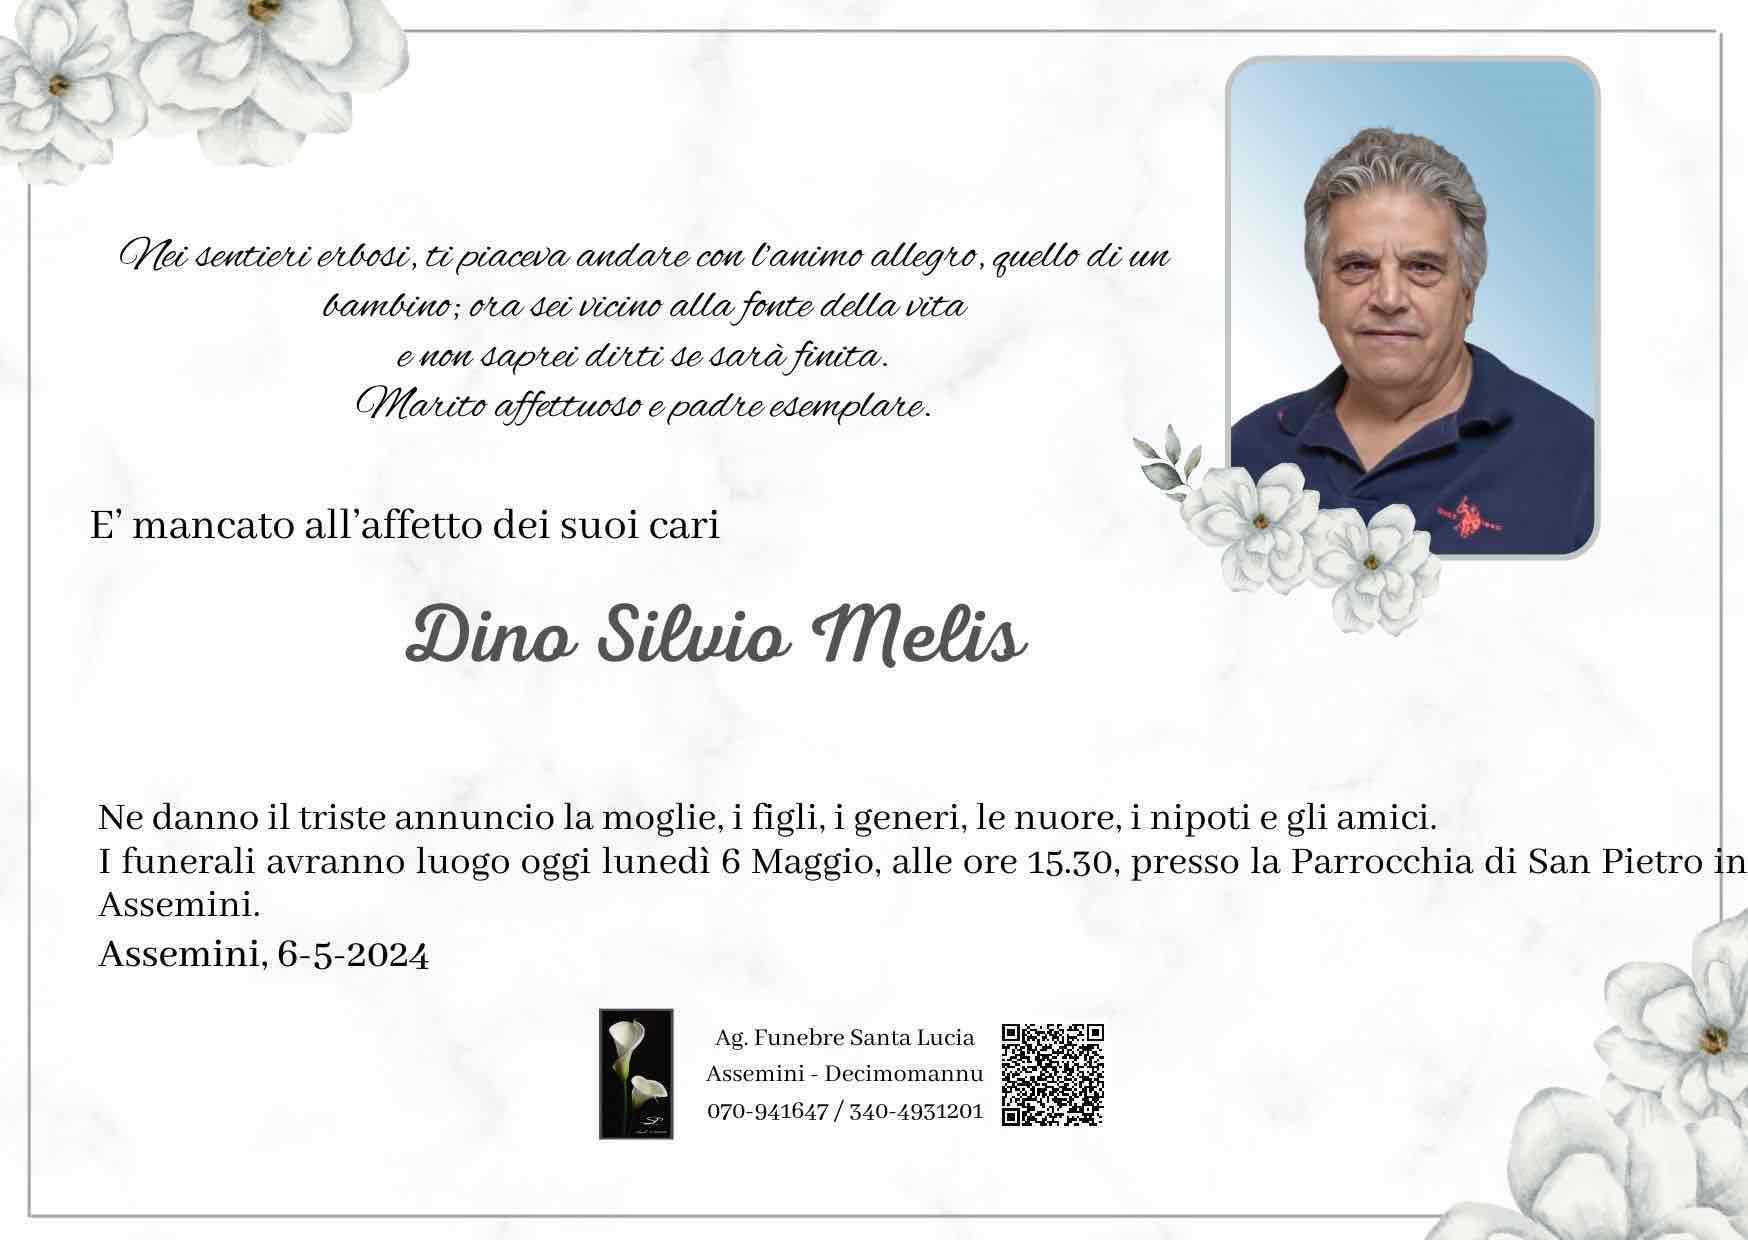 Dino Silvio Melis